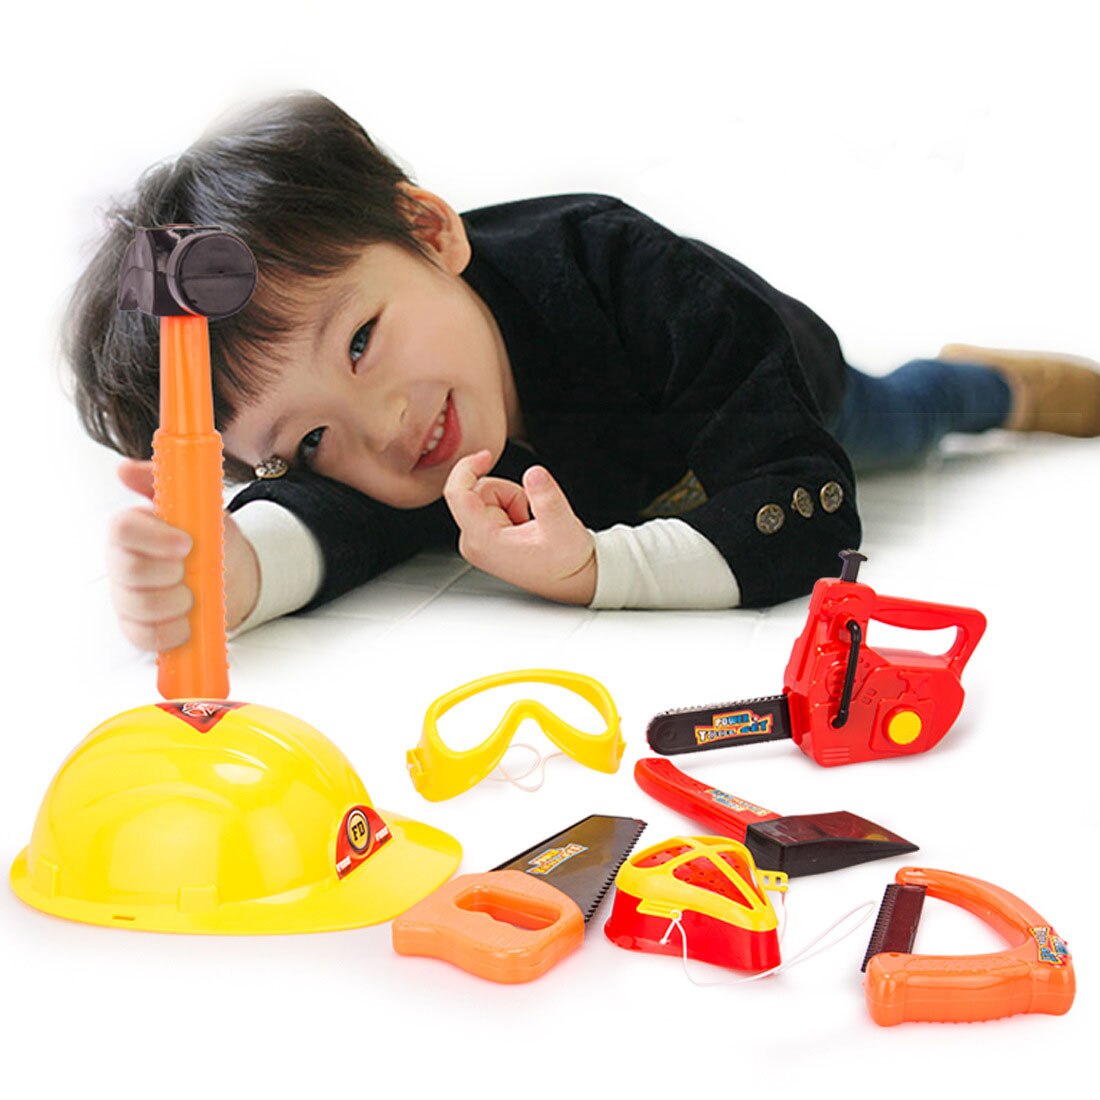 Børn reparationsværktøj legetøj abs sikkerhedssimulering elektrisk boretrækker demontering foregiver værktøj legetøj uddannelse børnelegetøj